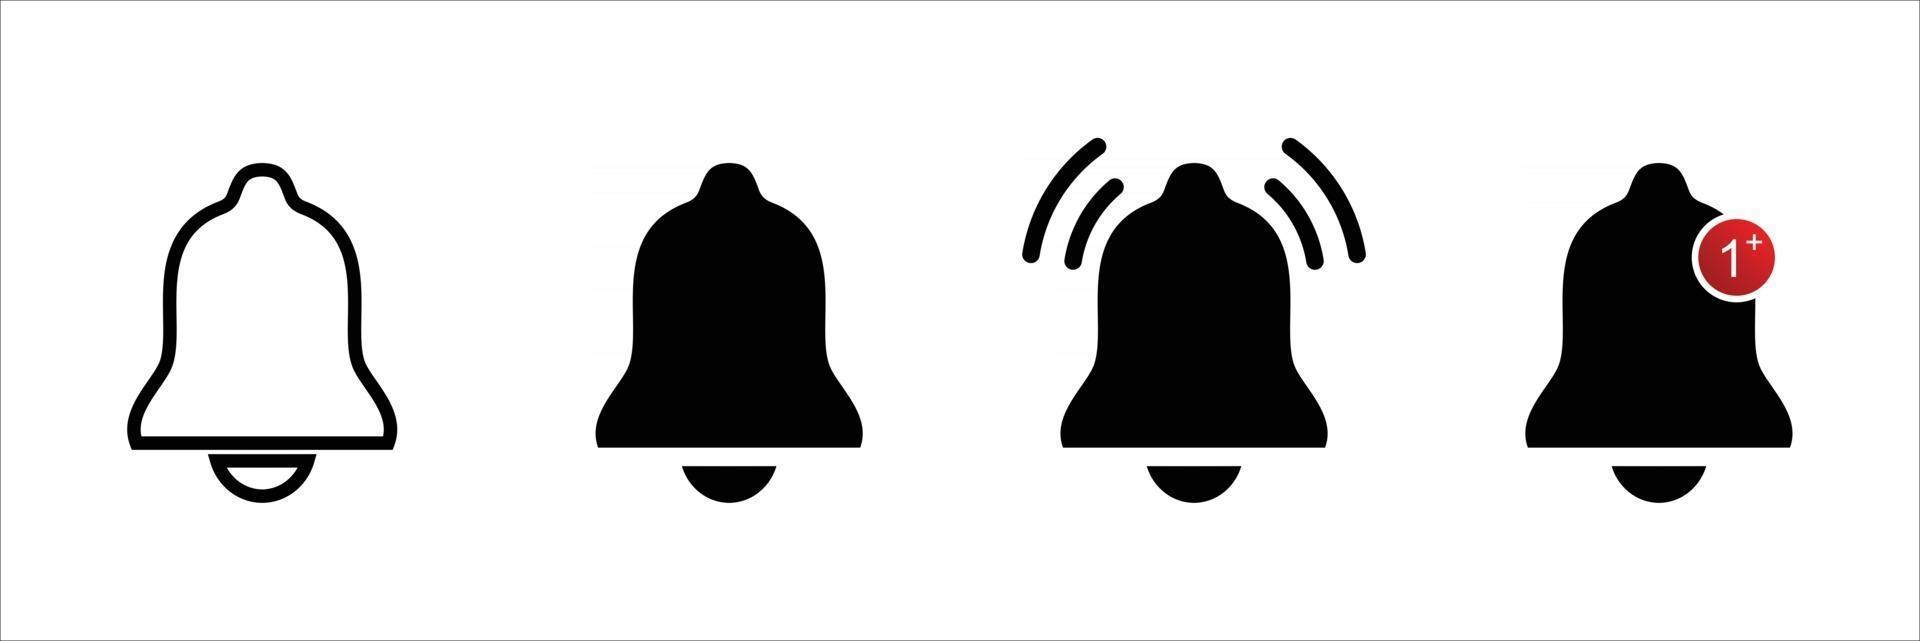 conjunto de iconos de campana, vector de iconos de campana, logotipo de campana